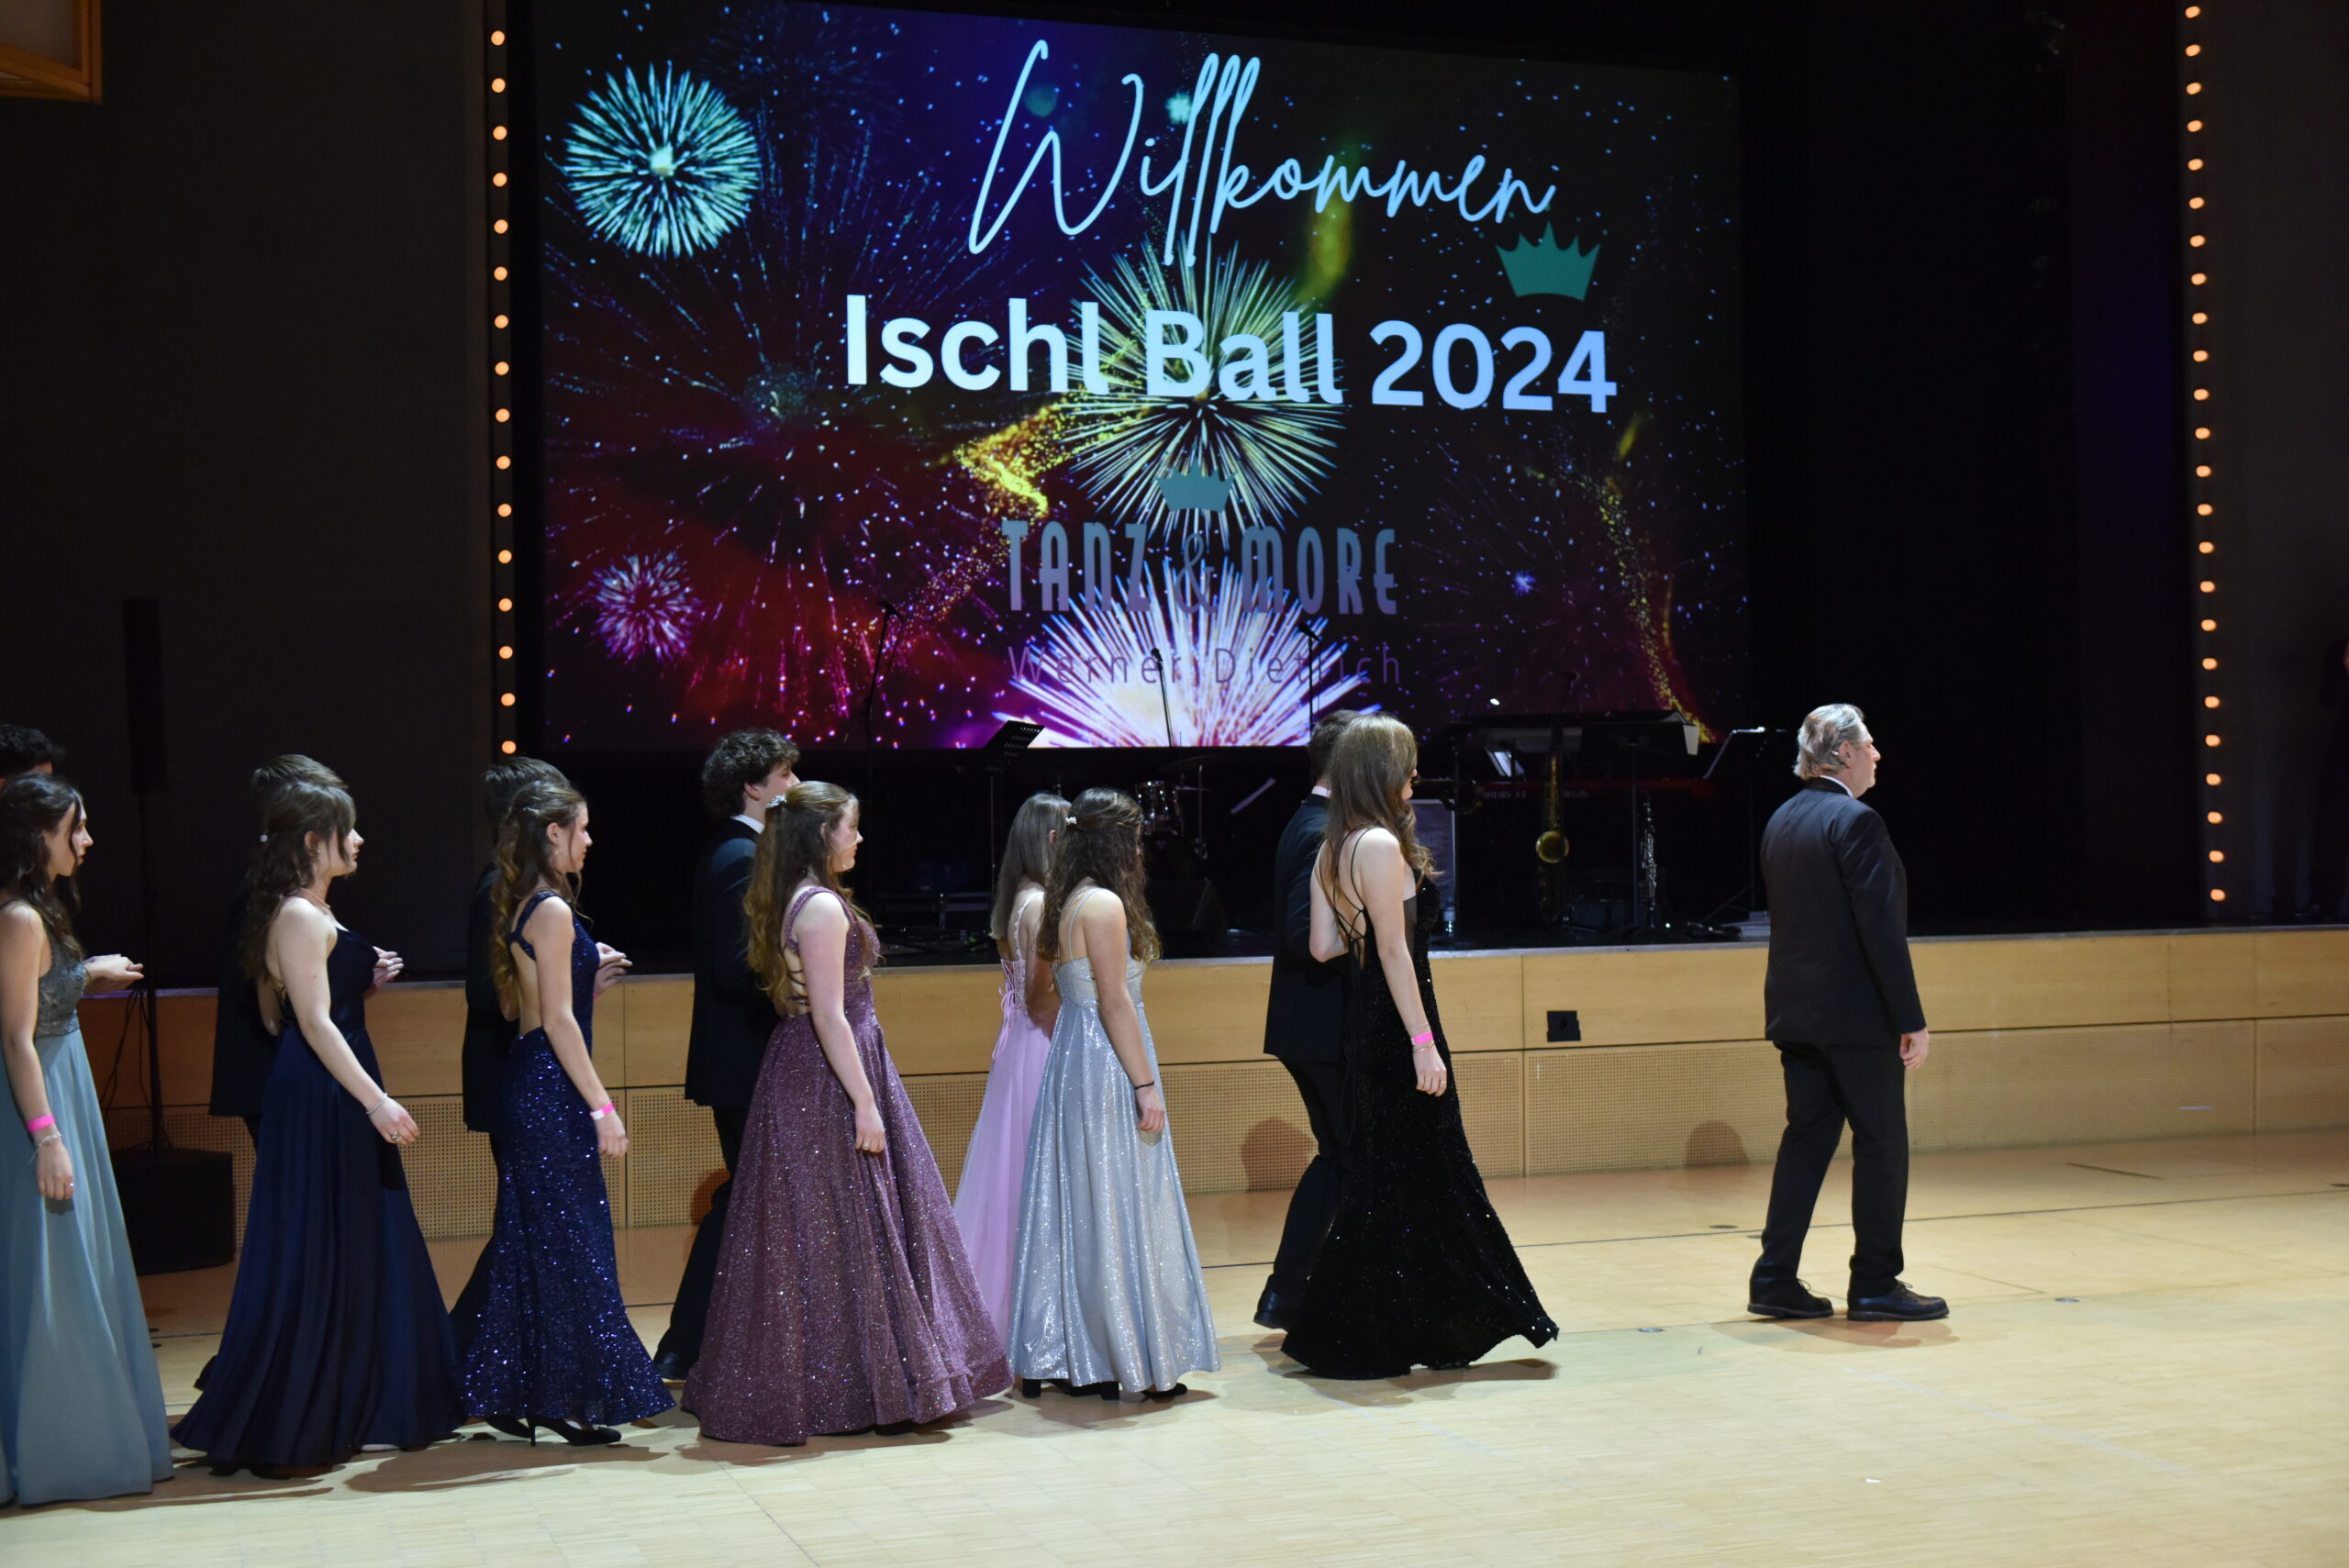 Die Debütanten des Ischl Balles 2024 starten mit der Eröffnung zur Fächerpolonaise